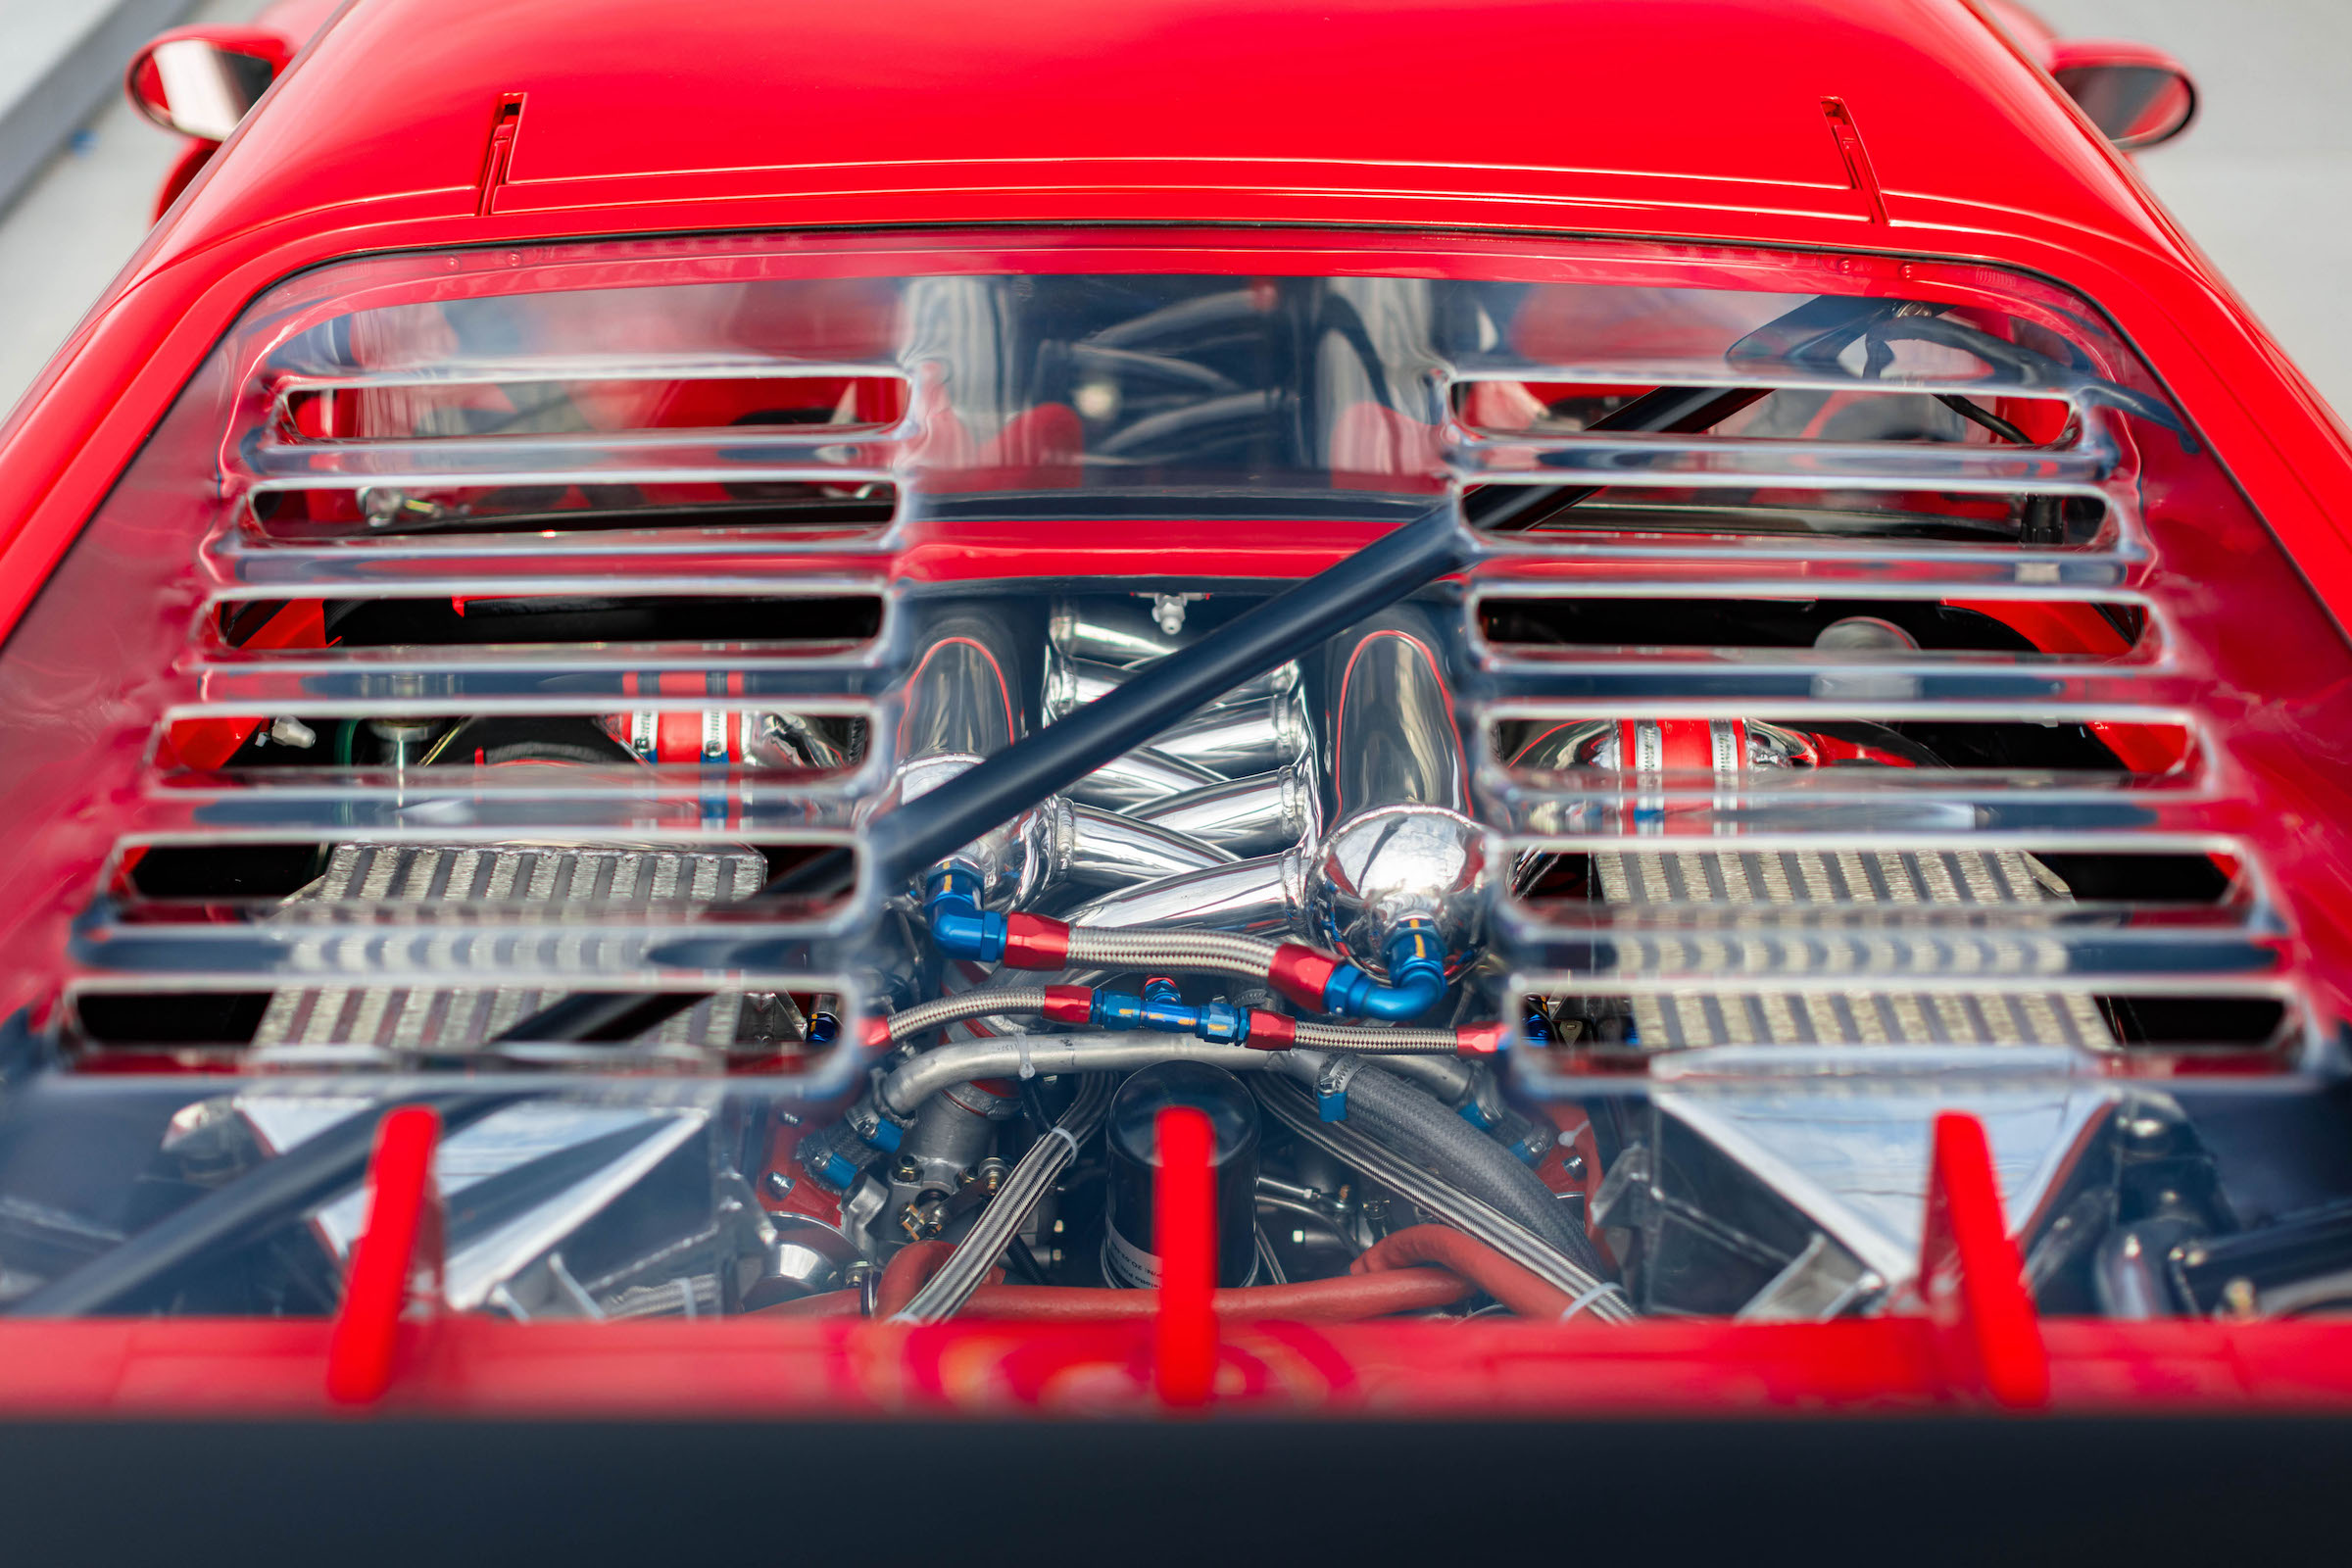 Ferrari 288 GTO Evoluzione engine